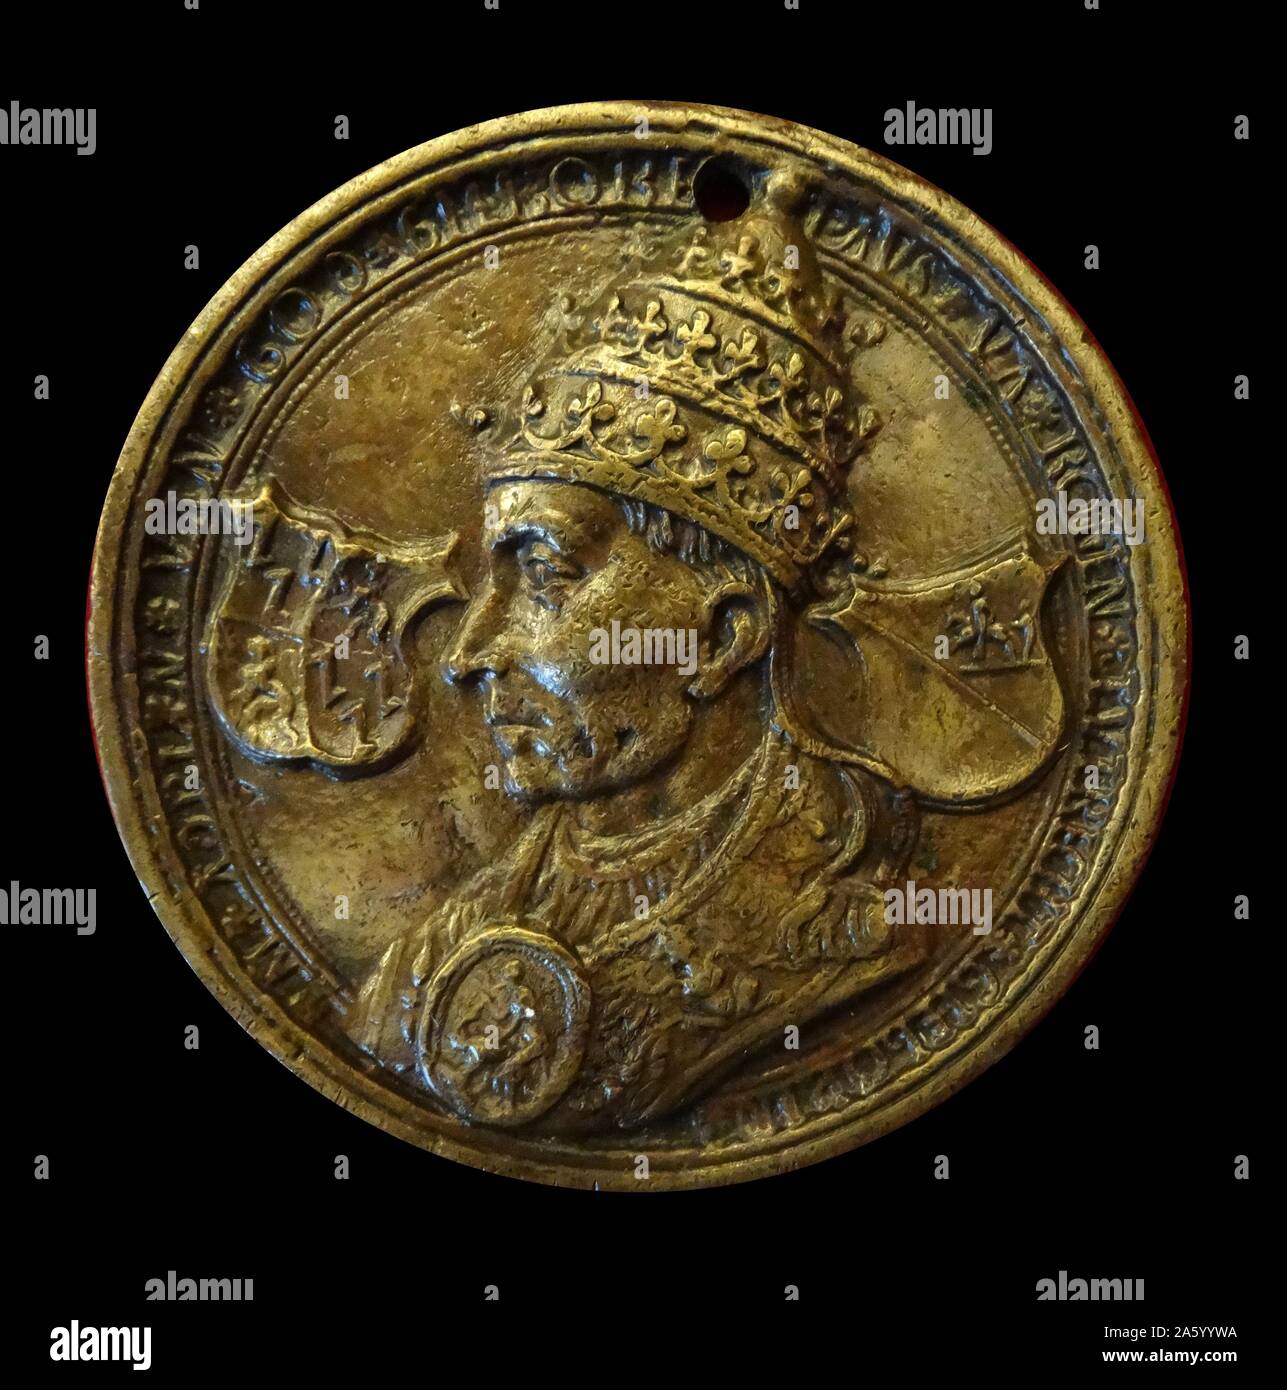 Münze zeigt Papst Adrian VI. Niederländischen. Datiert aus dem 16. Jahrhundert Stockfoto